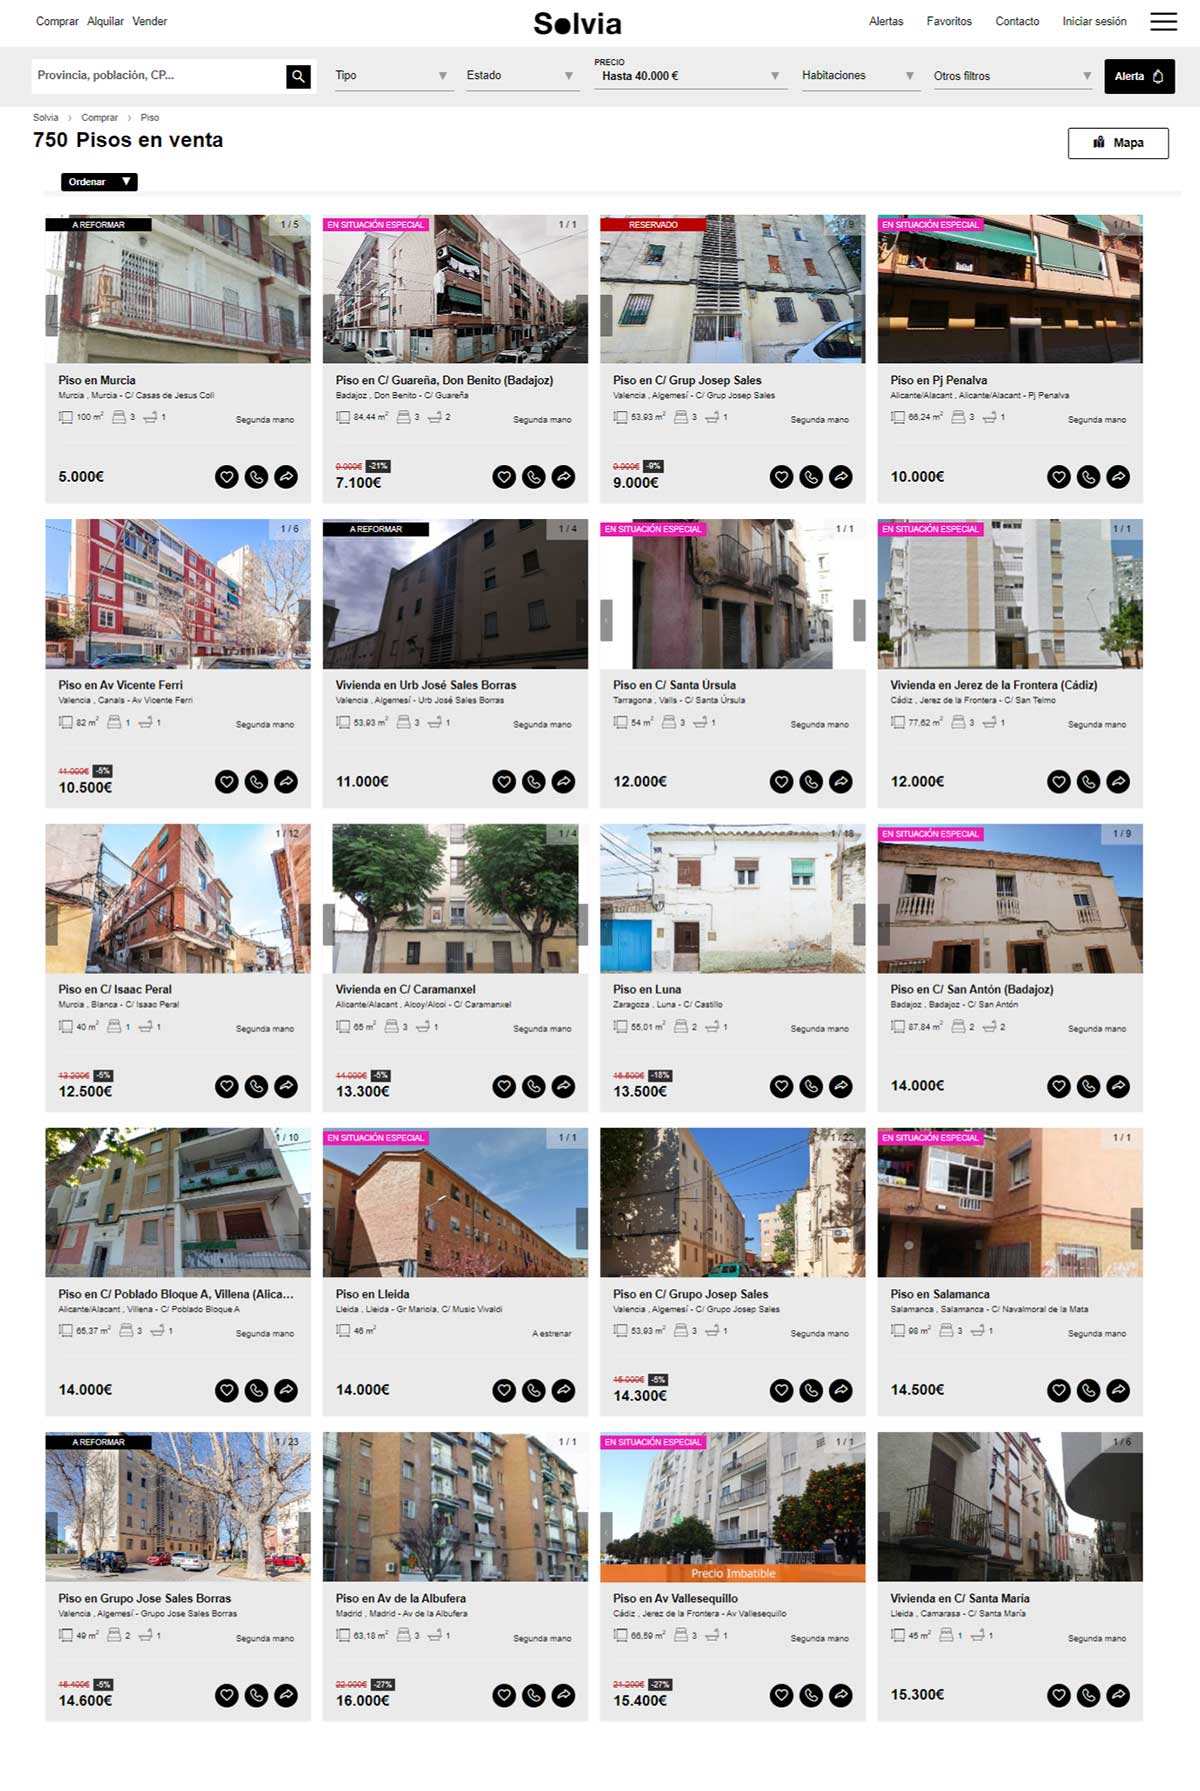 Catálogo de viviendas de Solvia